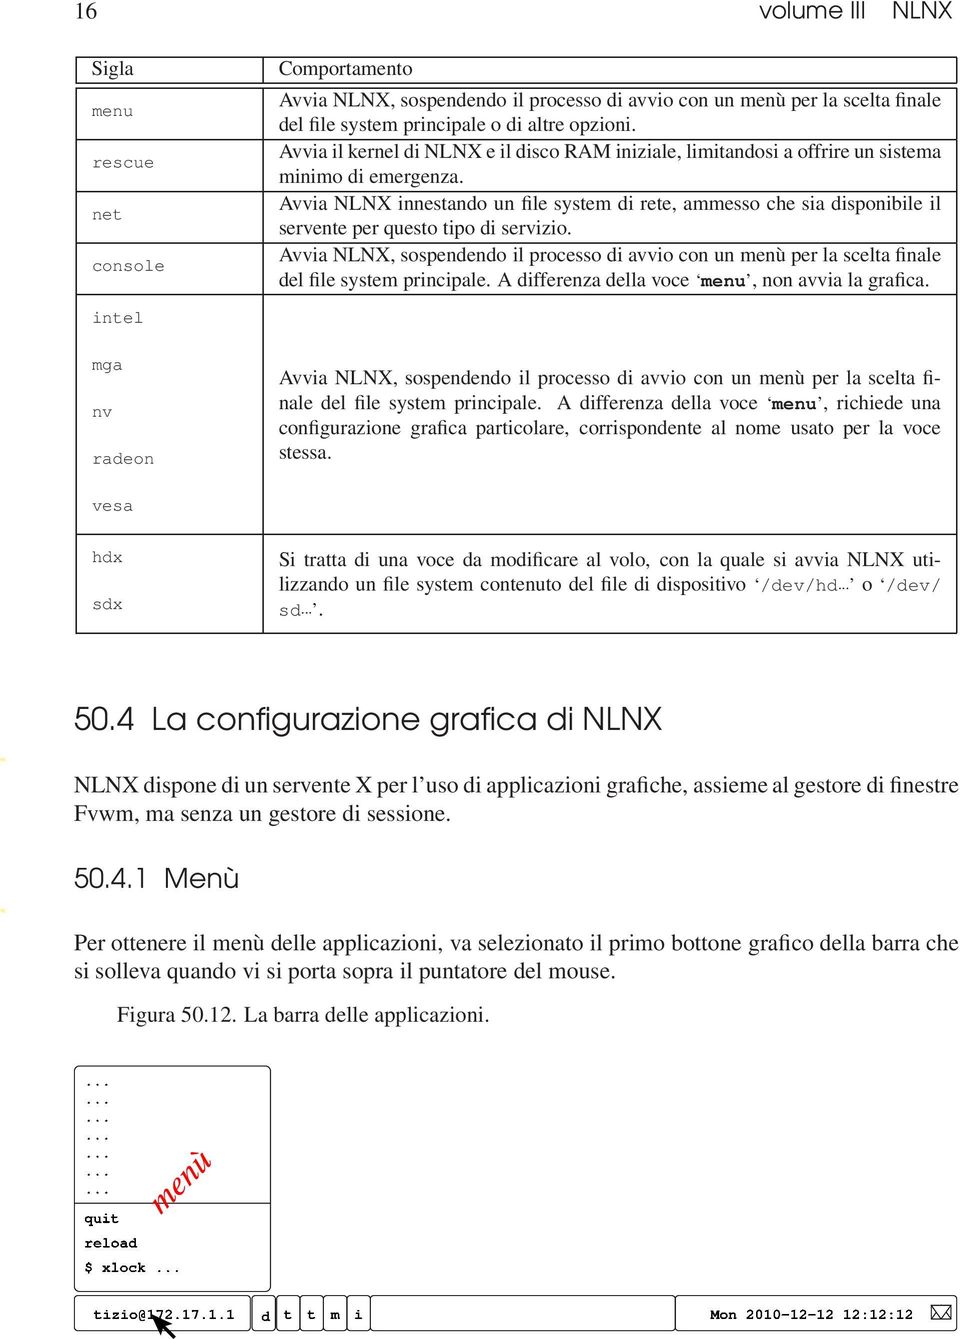 net Avvia NLNX innestando un file system di rete, ammesso che sia disponibile il servente per questo tipo di servizio.